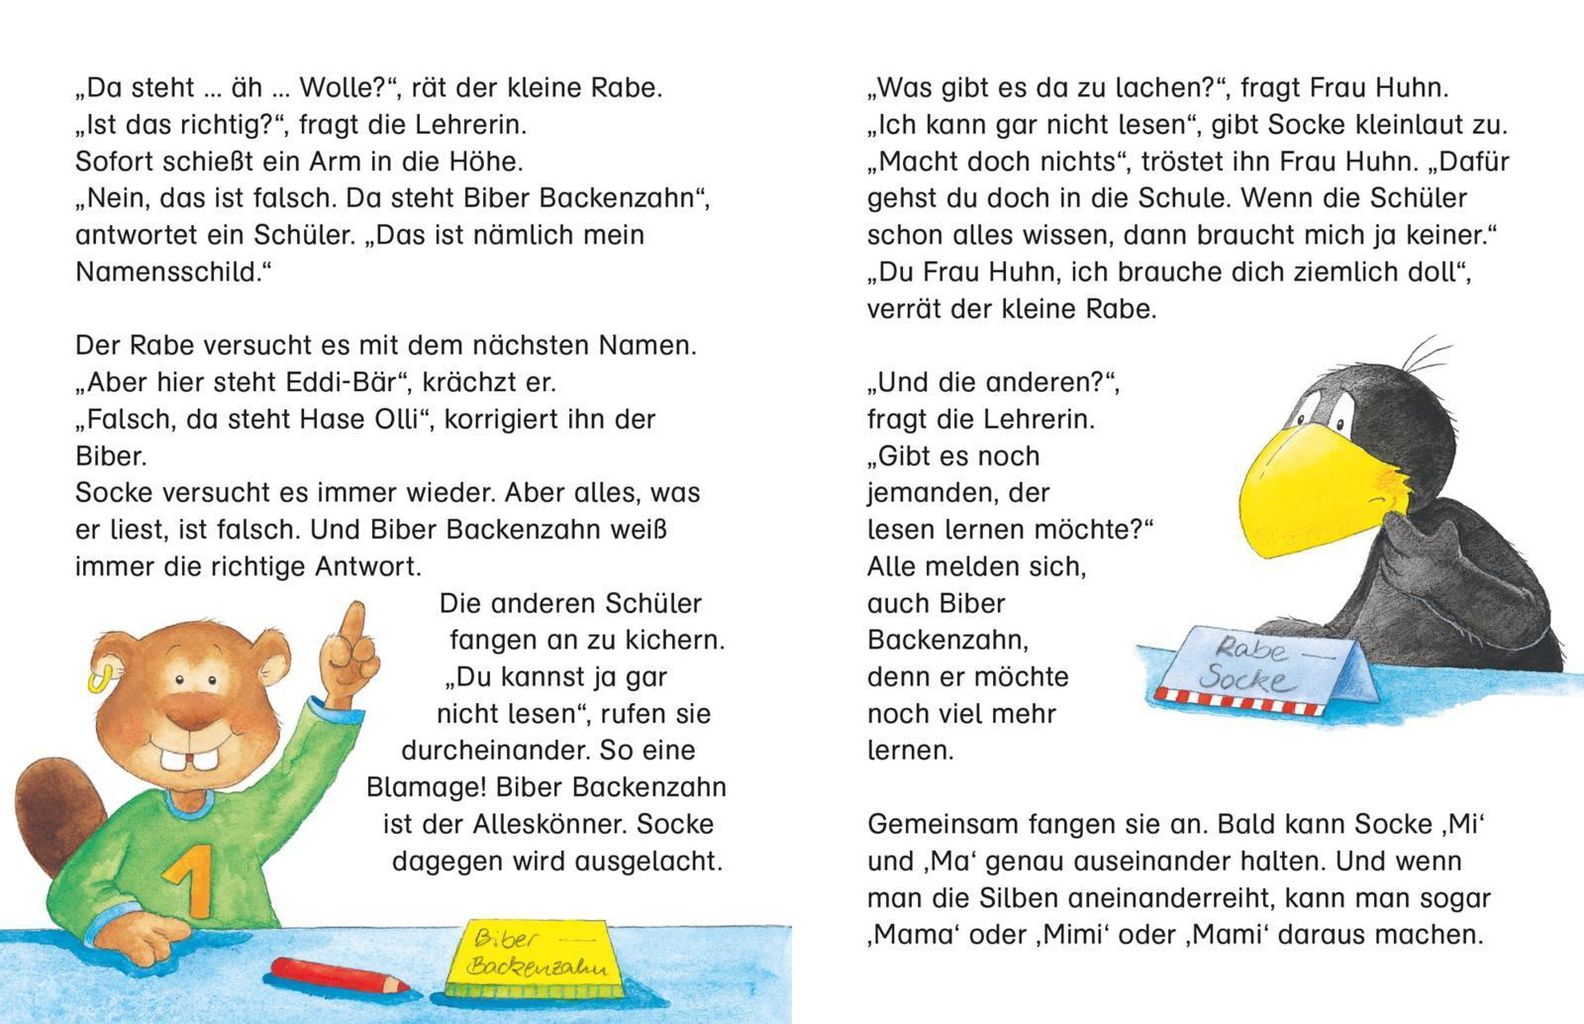 Der kleine Rabe Socke: Alles Schule - jetzt bin ich da! | Weltbild.ch